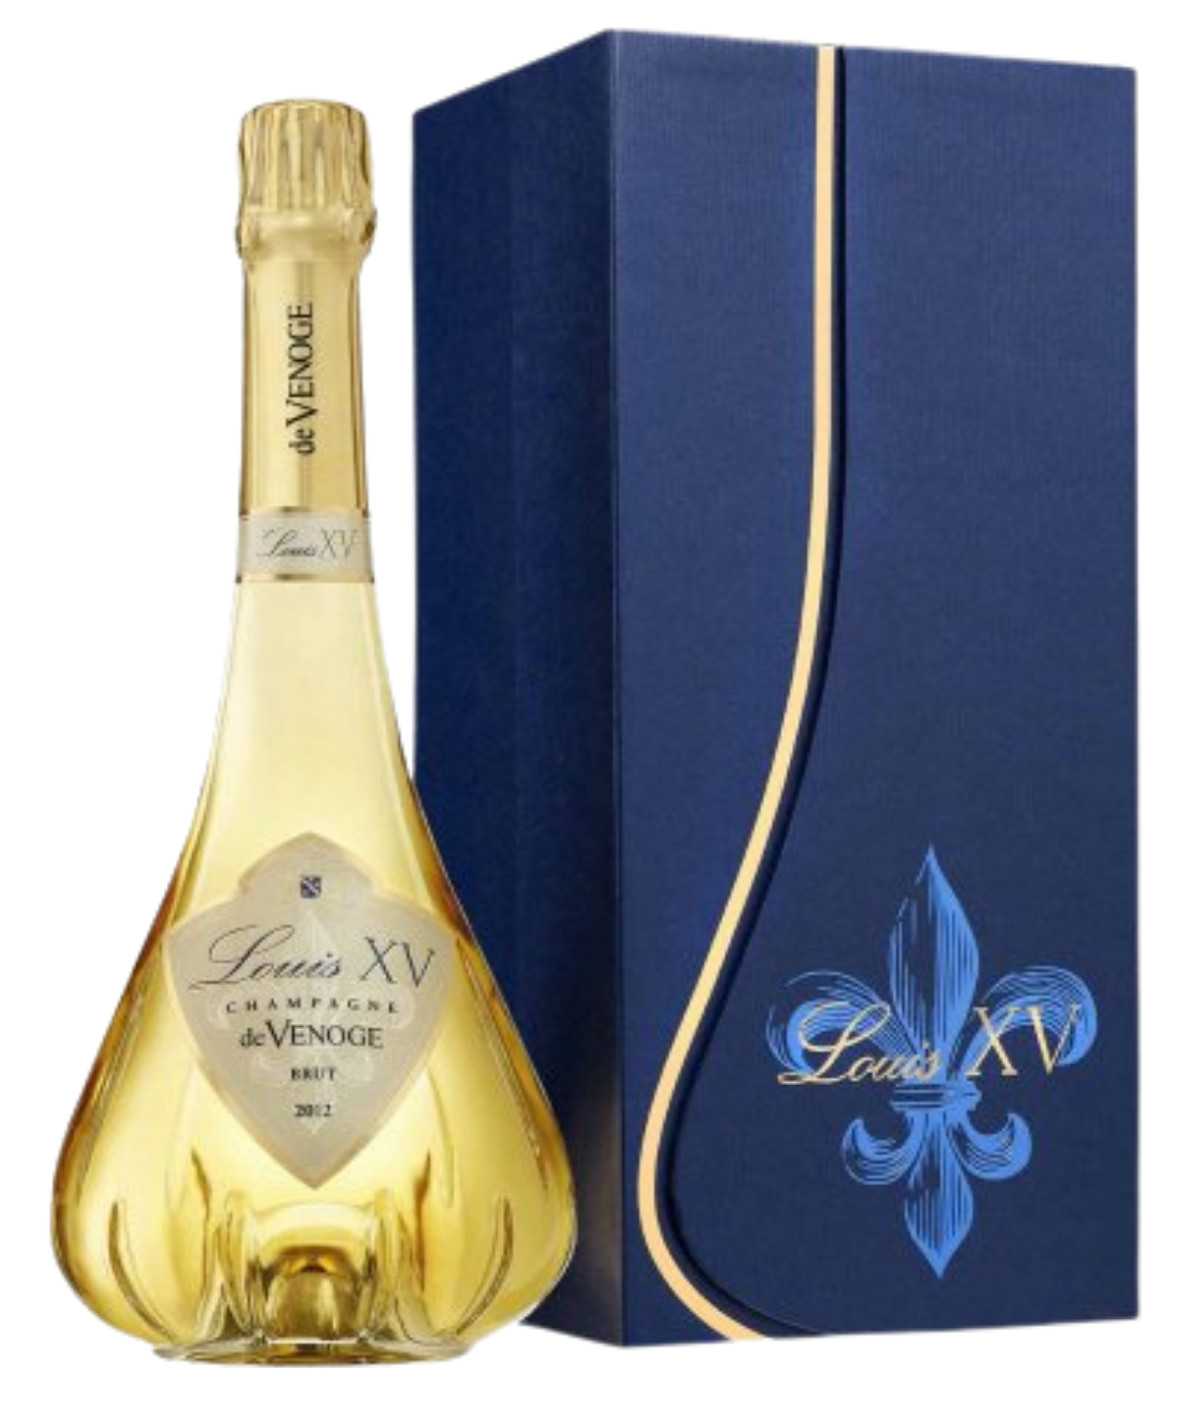 DE VENOGE champagne Cuvée Louis XV 2012 Grand Cru